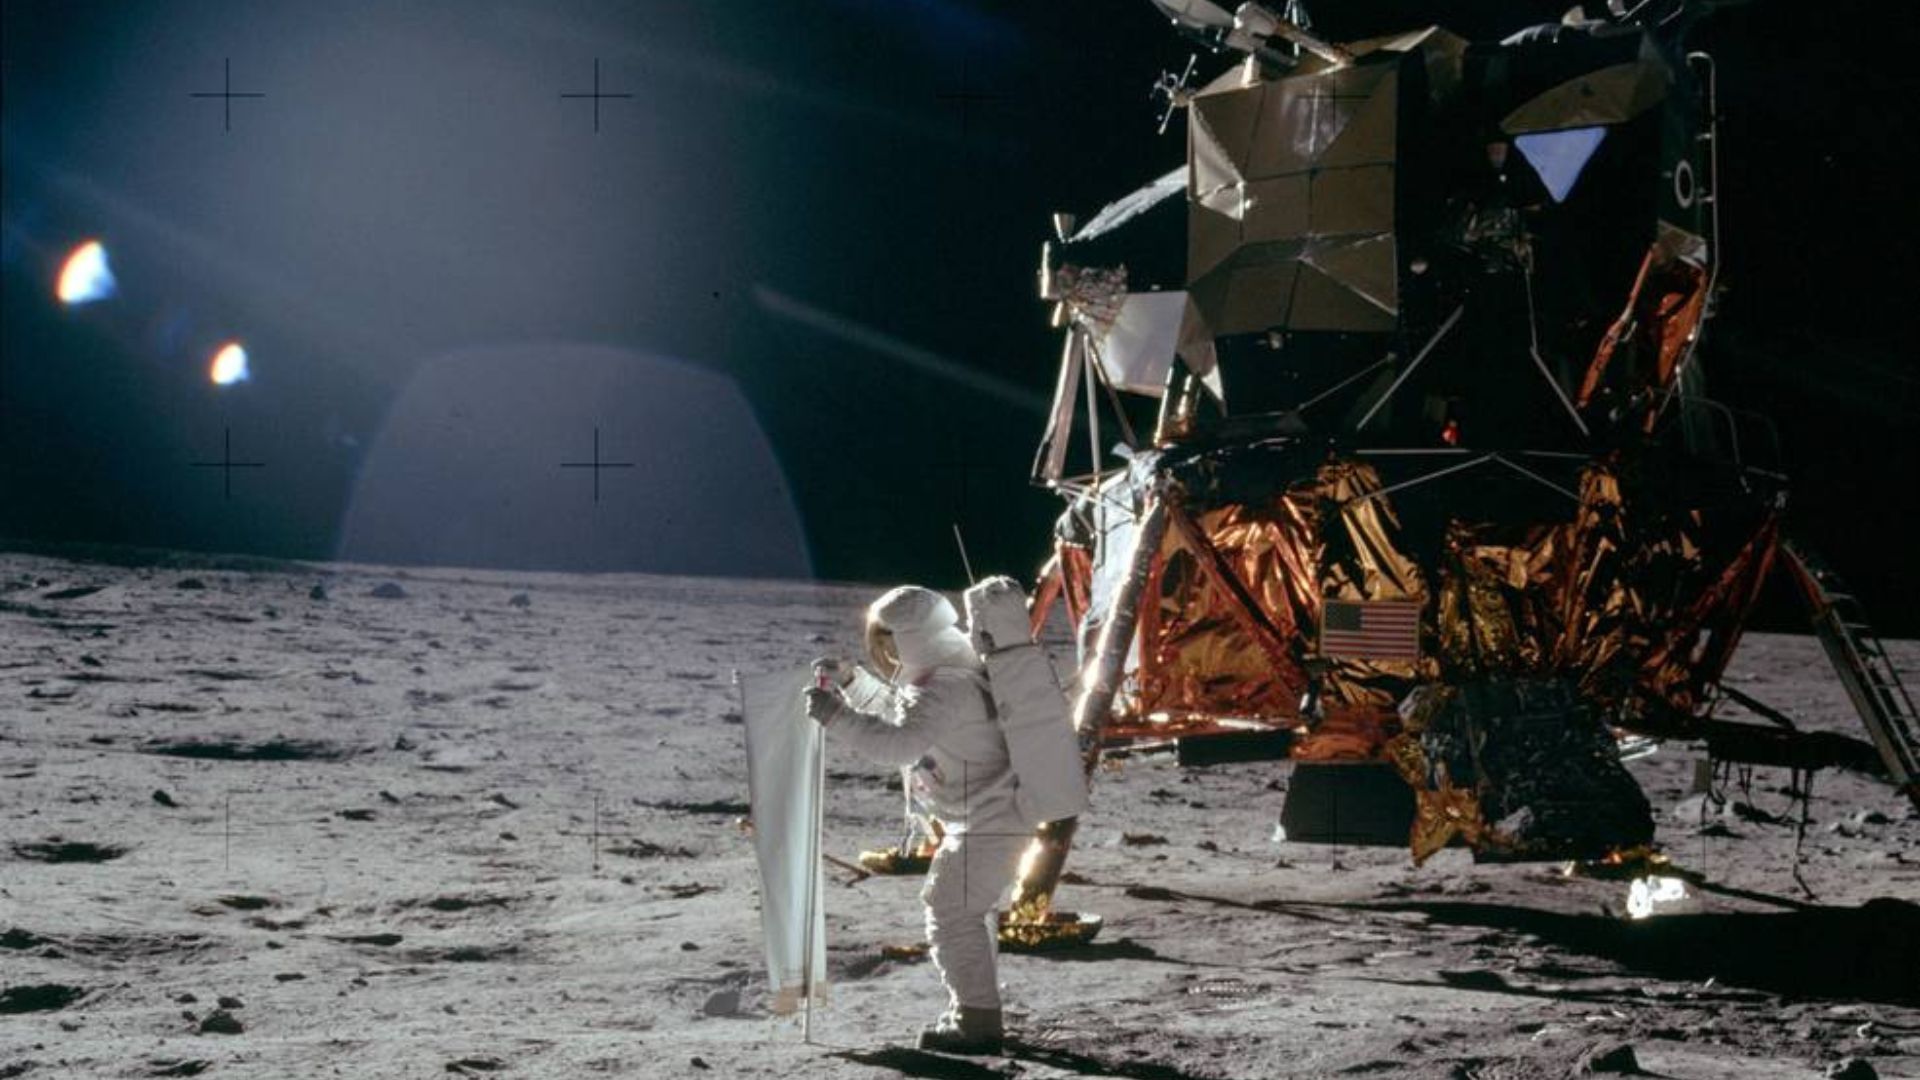 Uno de los astronautas de la misión Apolo 11 configurando el
Experimento de Colección de Viento Solar en el primer alunizaje de la historia. (Foto Prensa Libre: NASA) 